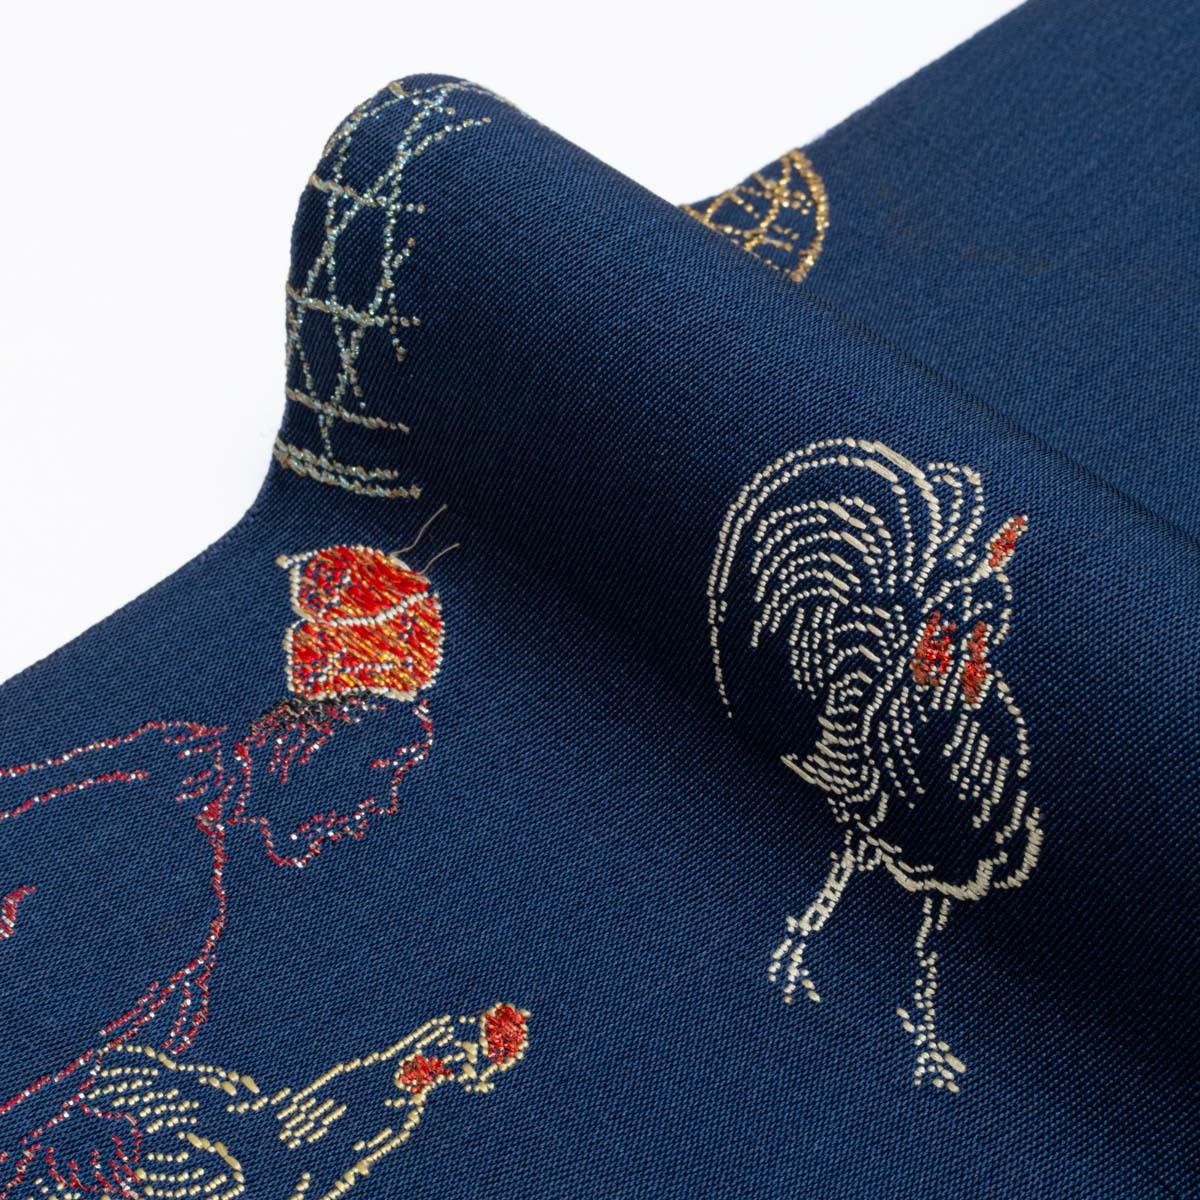 龍村平蔵 袋帯 鶏売りと町人の図 風俗画 濃紺 西陣織 正絹の画像7